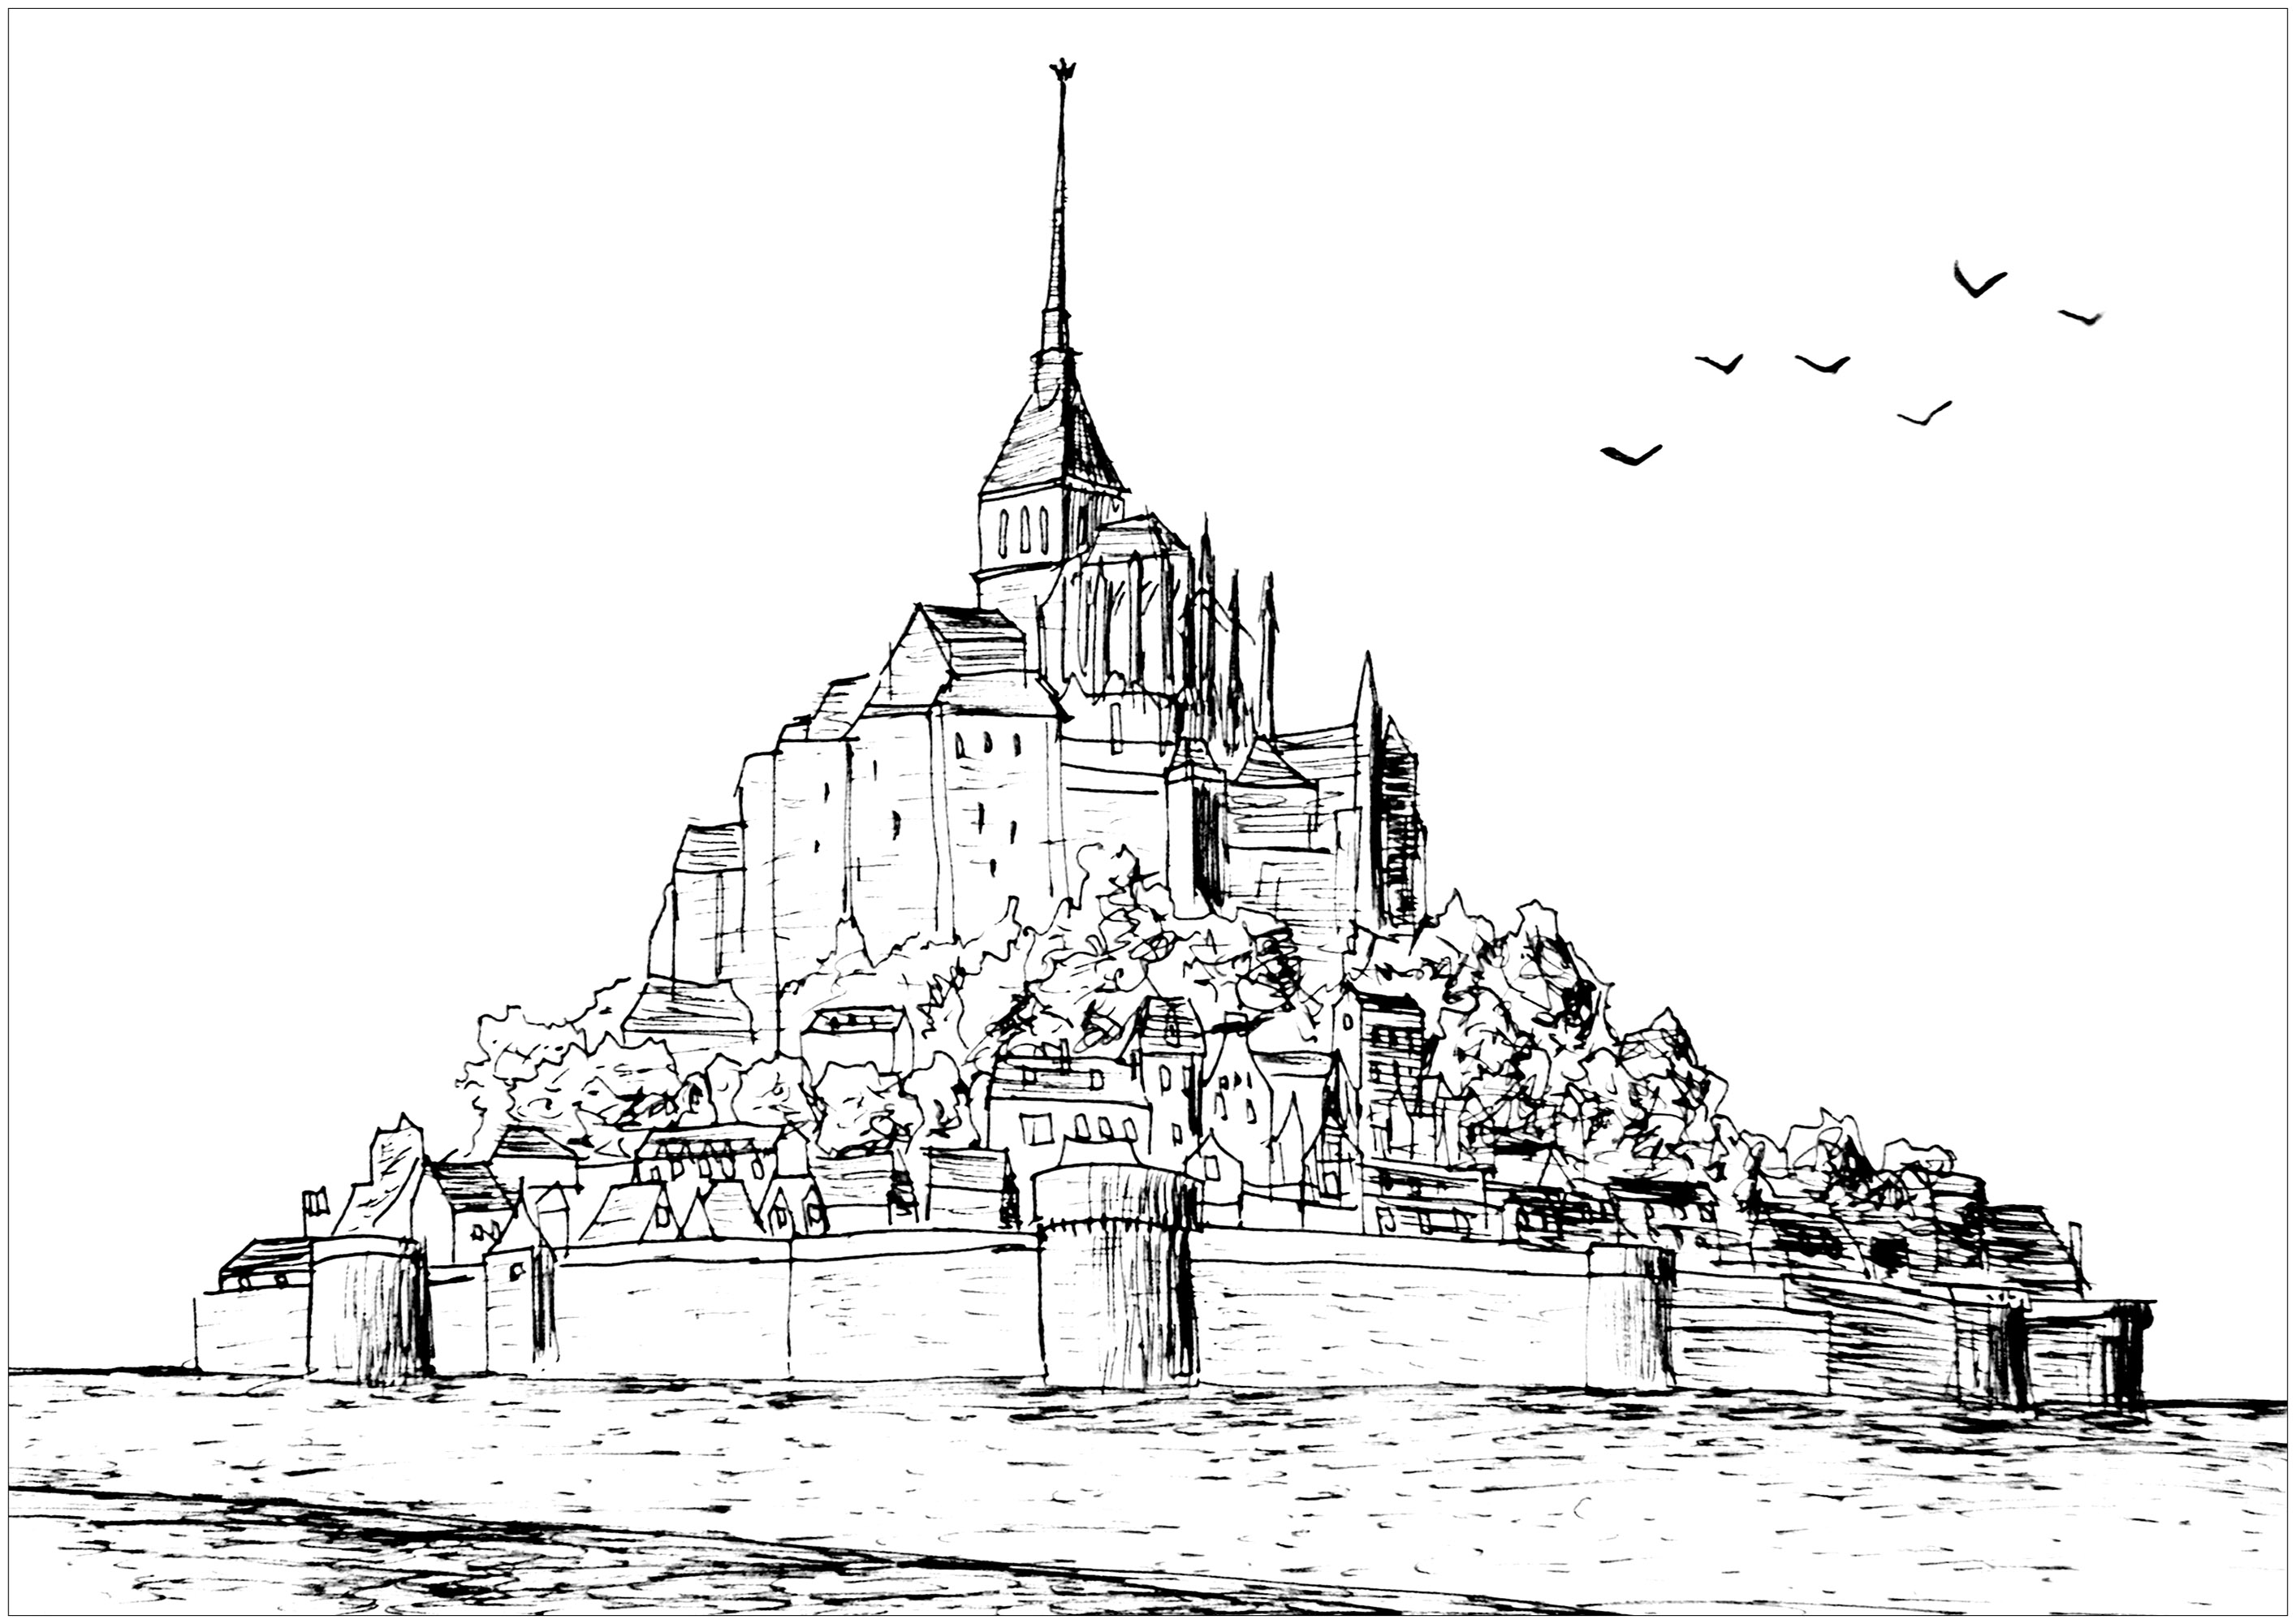 Disegno originale di Mont-Saint-Michel in Francia. Mont Saint-Michel e la sua baia fanno parte della lista dei siti Patrimonio dell'Umanità dell'UNESCO. È visitato da oltre 3 milioni di persone ogni anno, per una popolazione di 50 abitanti. Oltre 60 edifici del comune sono protetti in Francia come 'monuments historiques'.